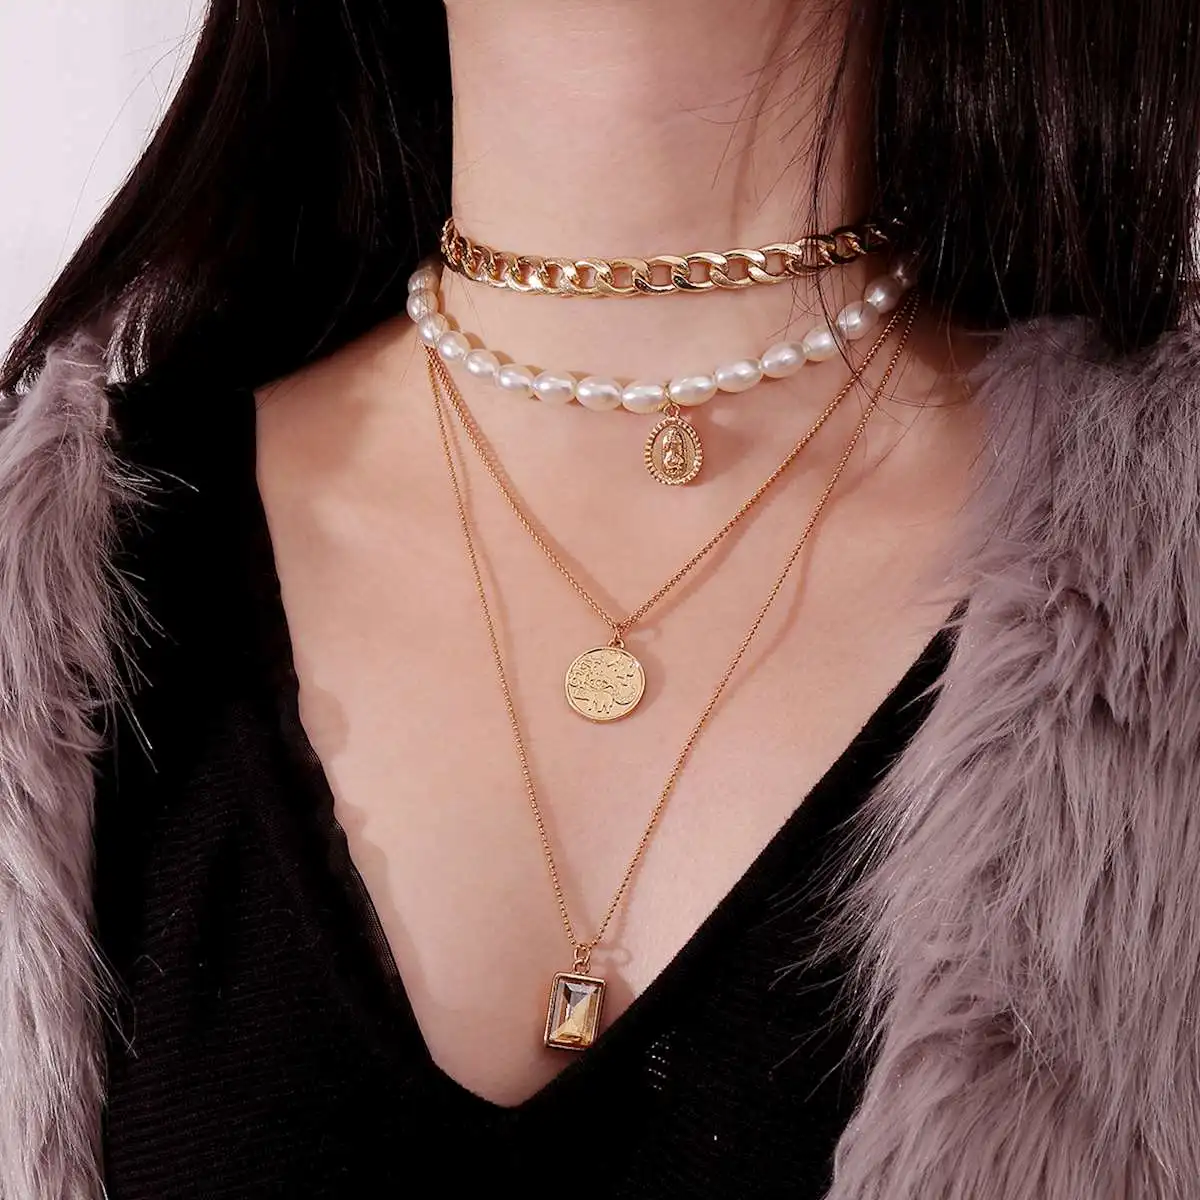 HUANZHI Новая мода золотистый цвет, много слоев цепочки из монеток жемчужные ожерелья геометрические хрустальные подвески золотые ожерелья для женщин